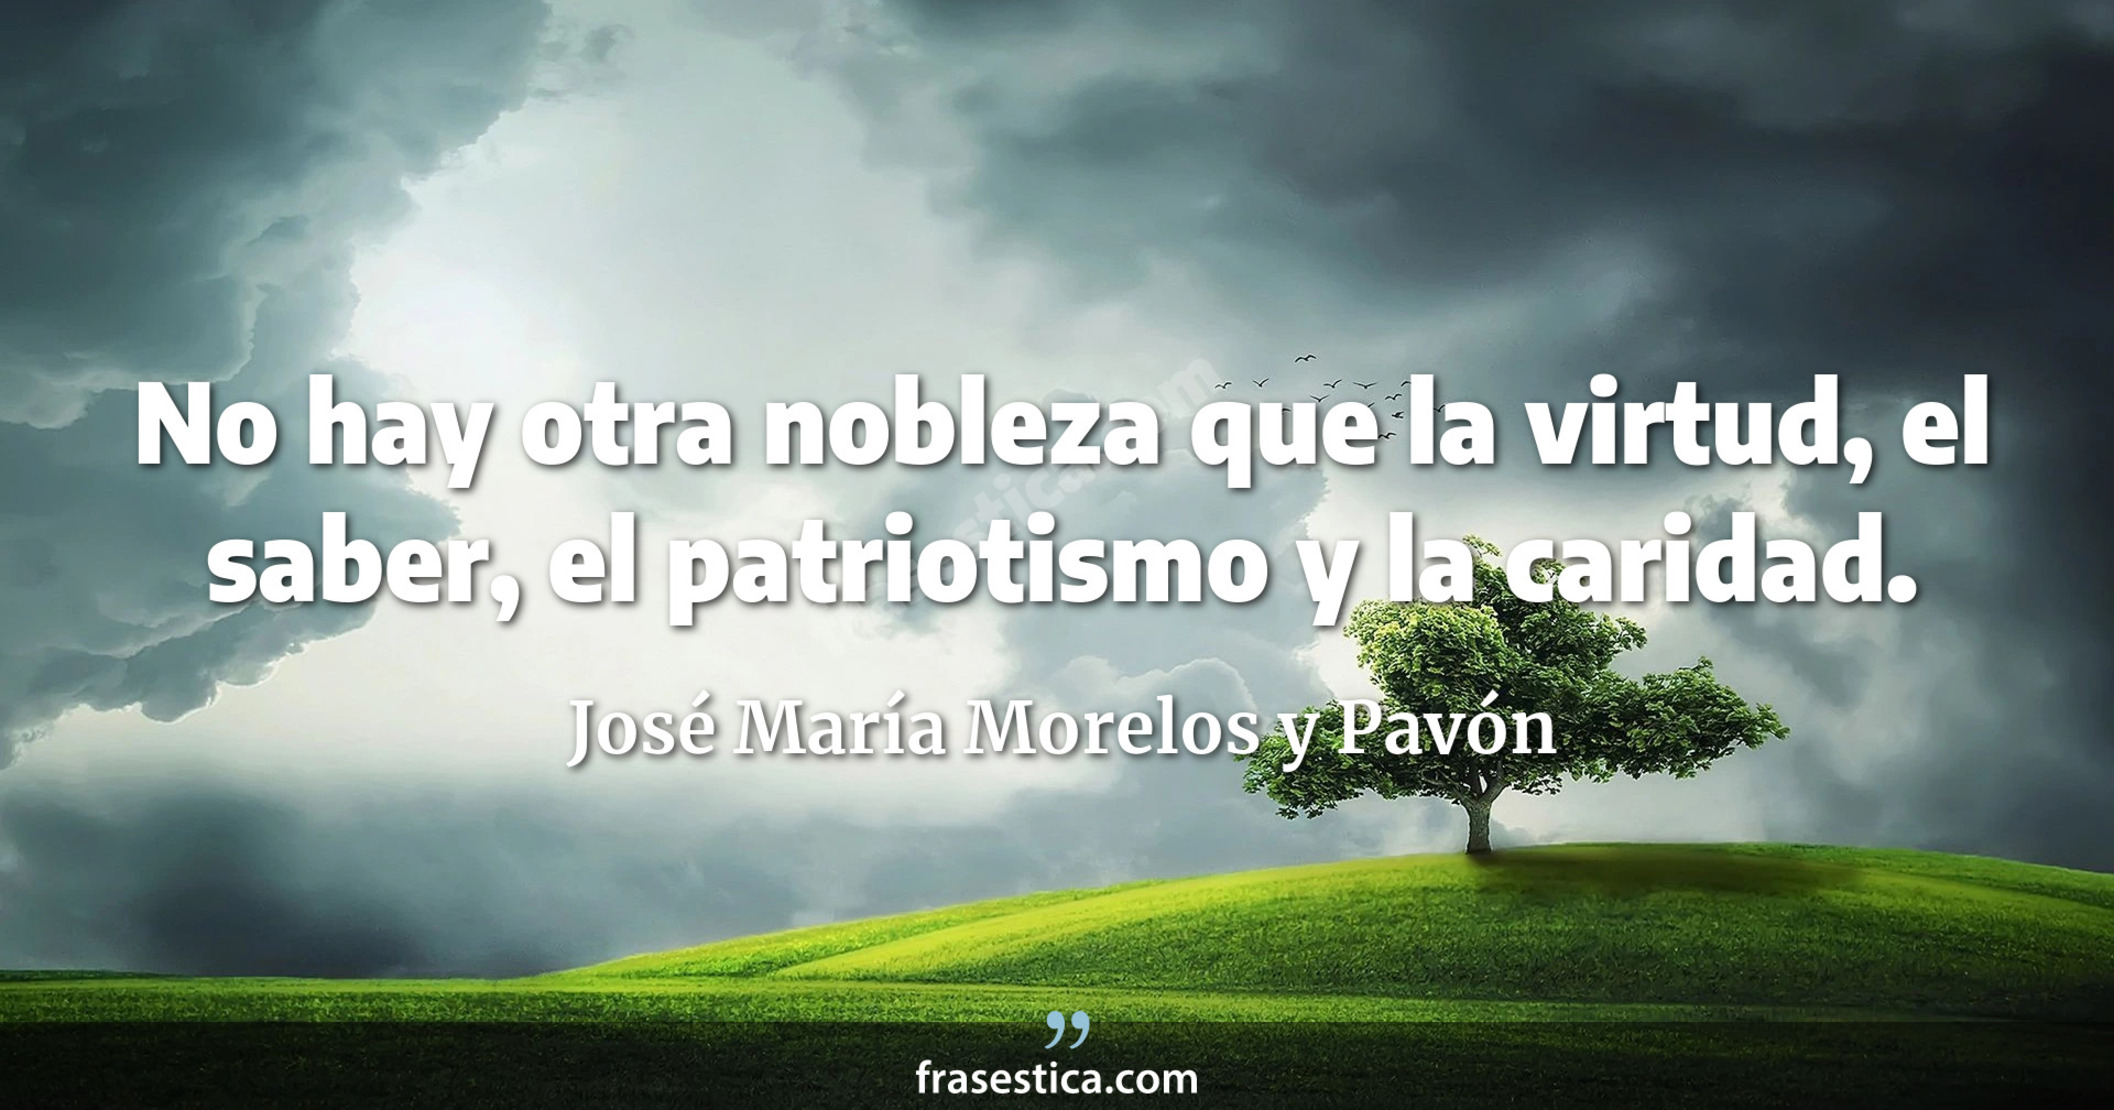 No hay otra nobleza que la virtud, el saber, el patriotismo y la caridad. - José María Morelos y Pavón